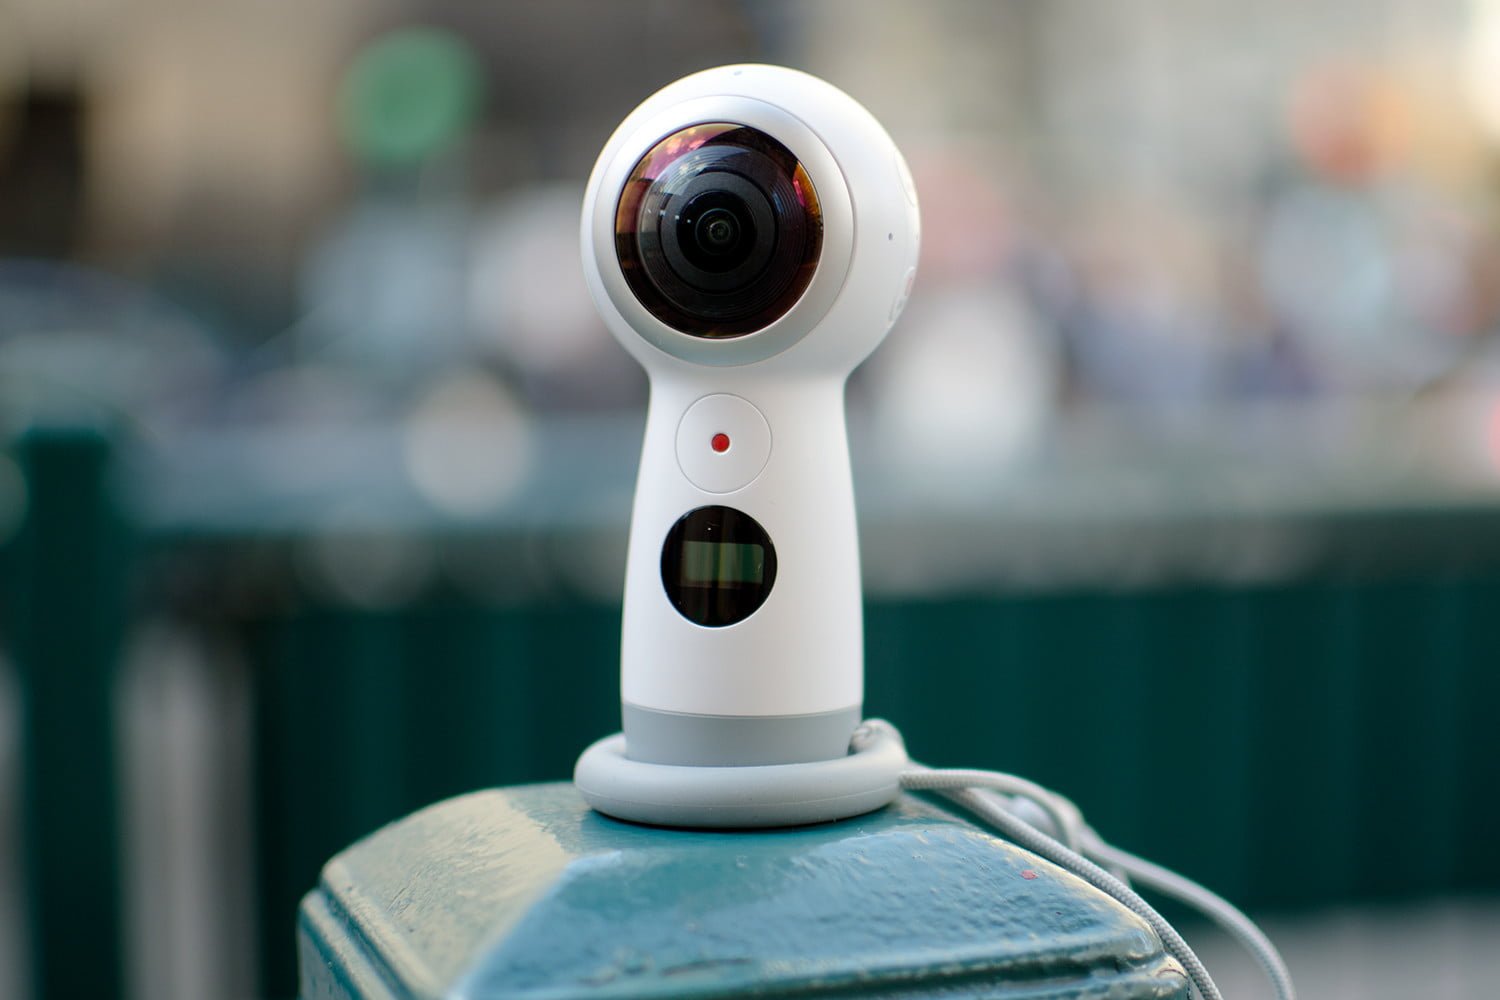 هذه هي أفضل كاميرات 360 درجة الاستهلاكية المتوفرة في العالم حاليًا